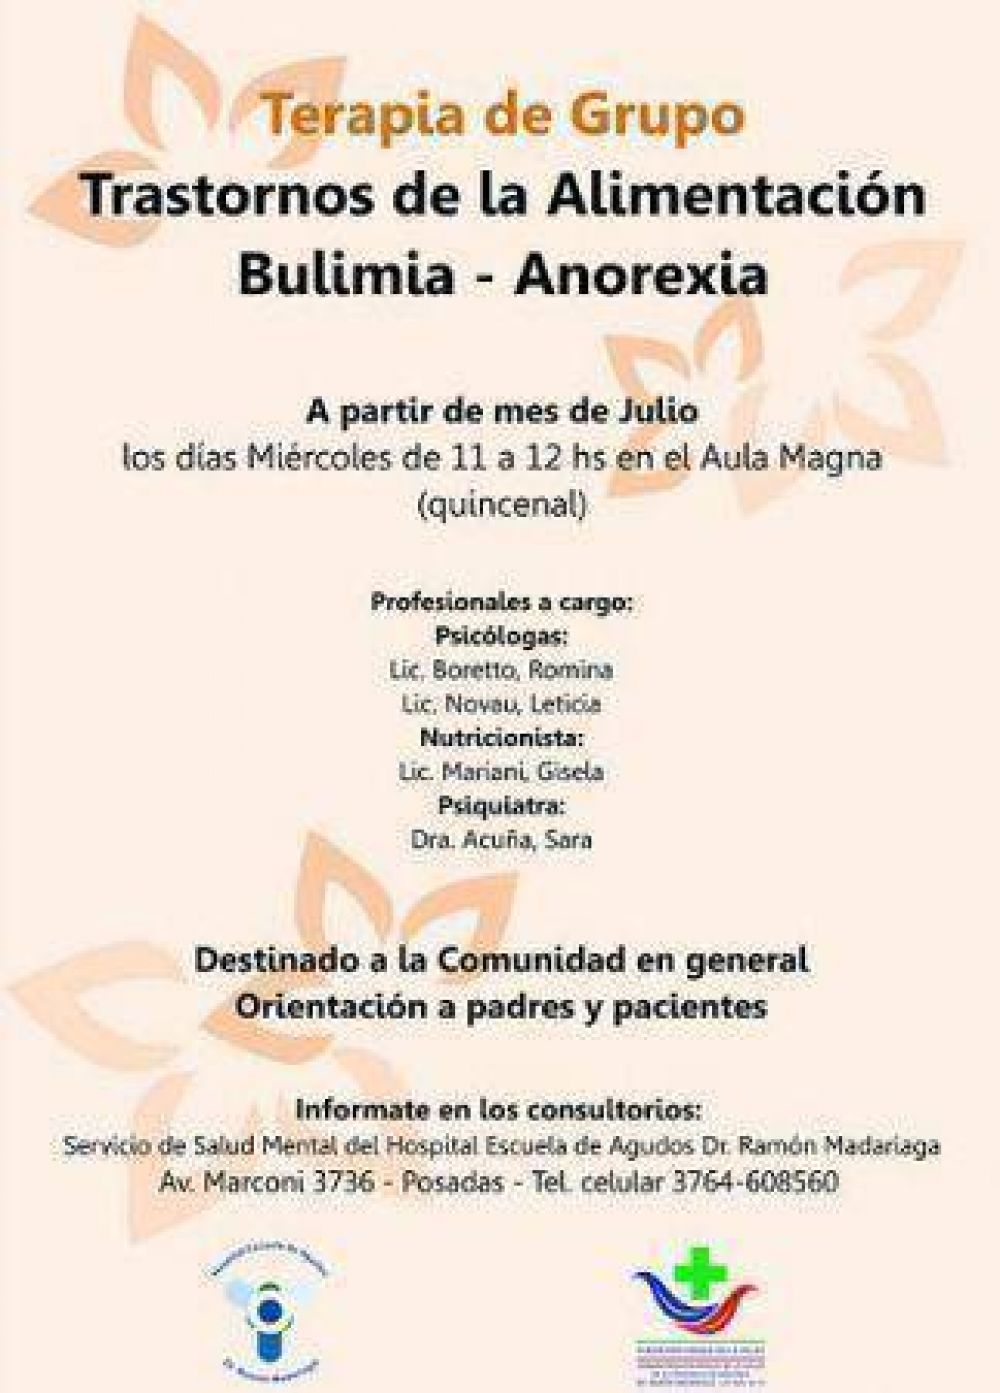 El 16 de julio es el segundo encuentro de Terapia de Grupo para tratar Bulimia y Anorexia en el Hospital Escuela